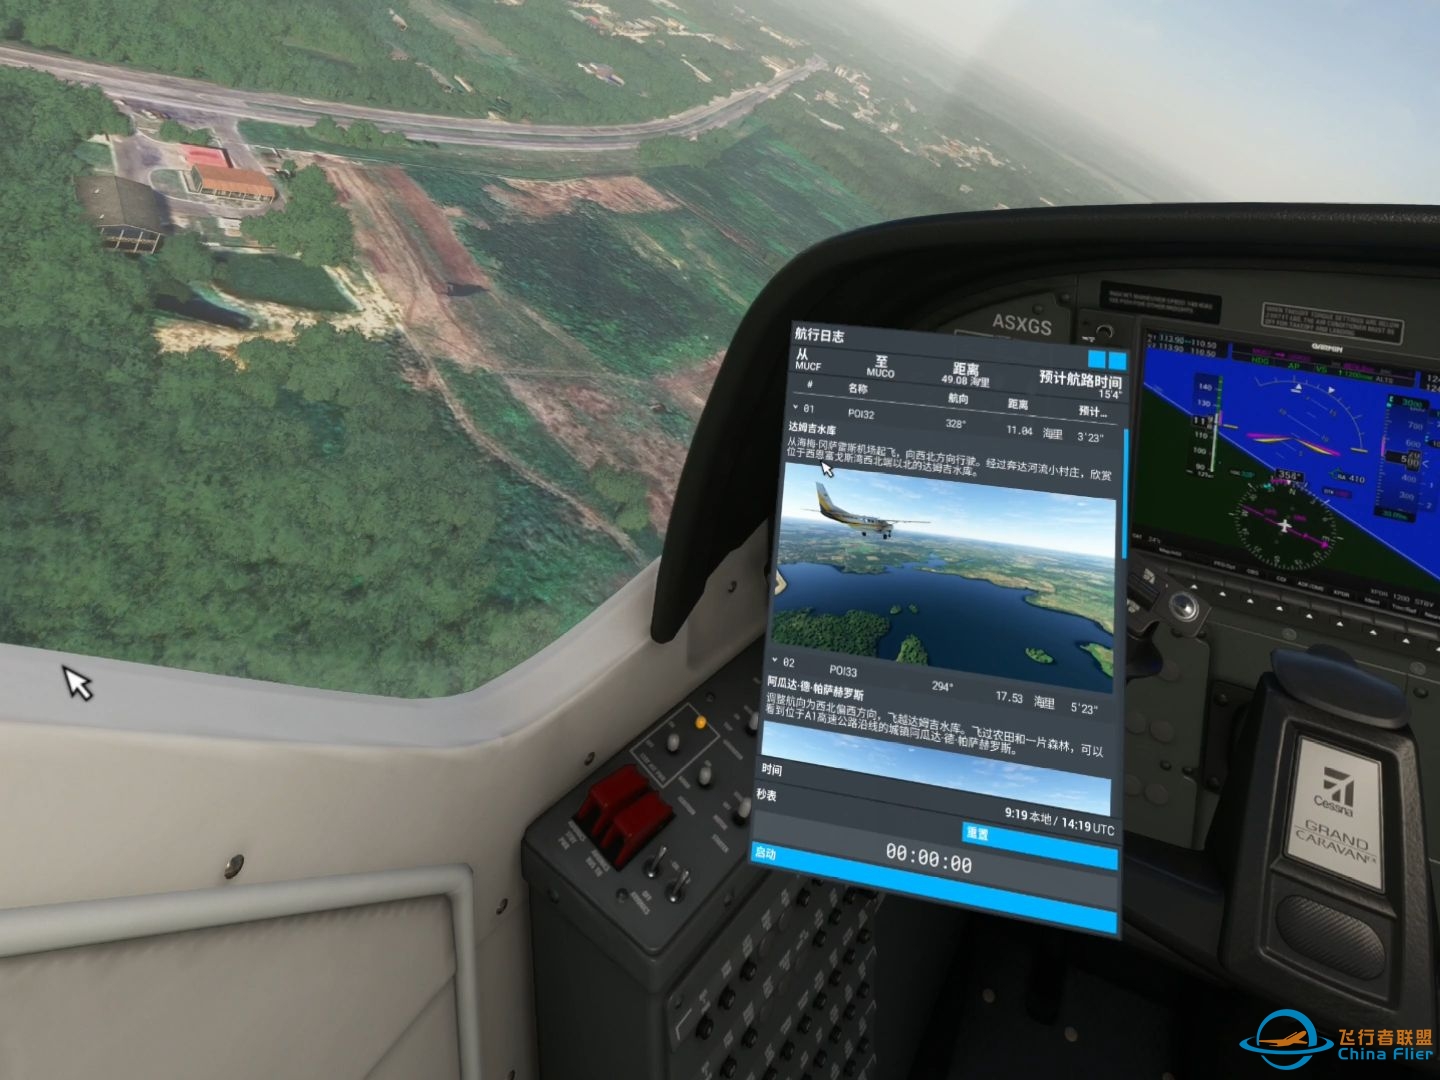 微软模拟飞行 584 VR 古巴圣地亚哥至哈瓦那 郊野之行-2269 